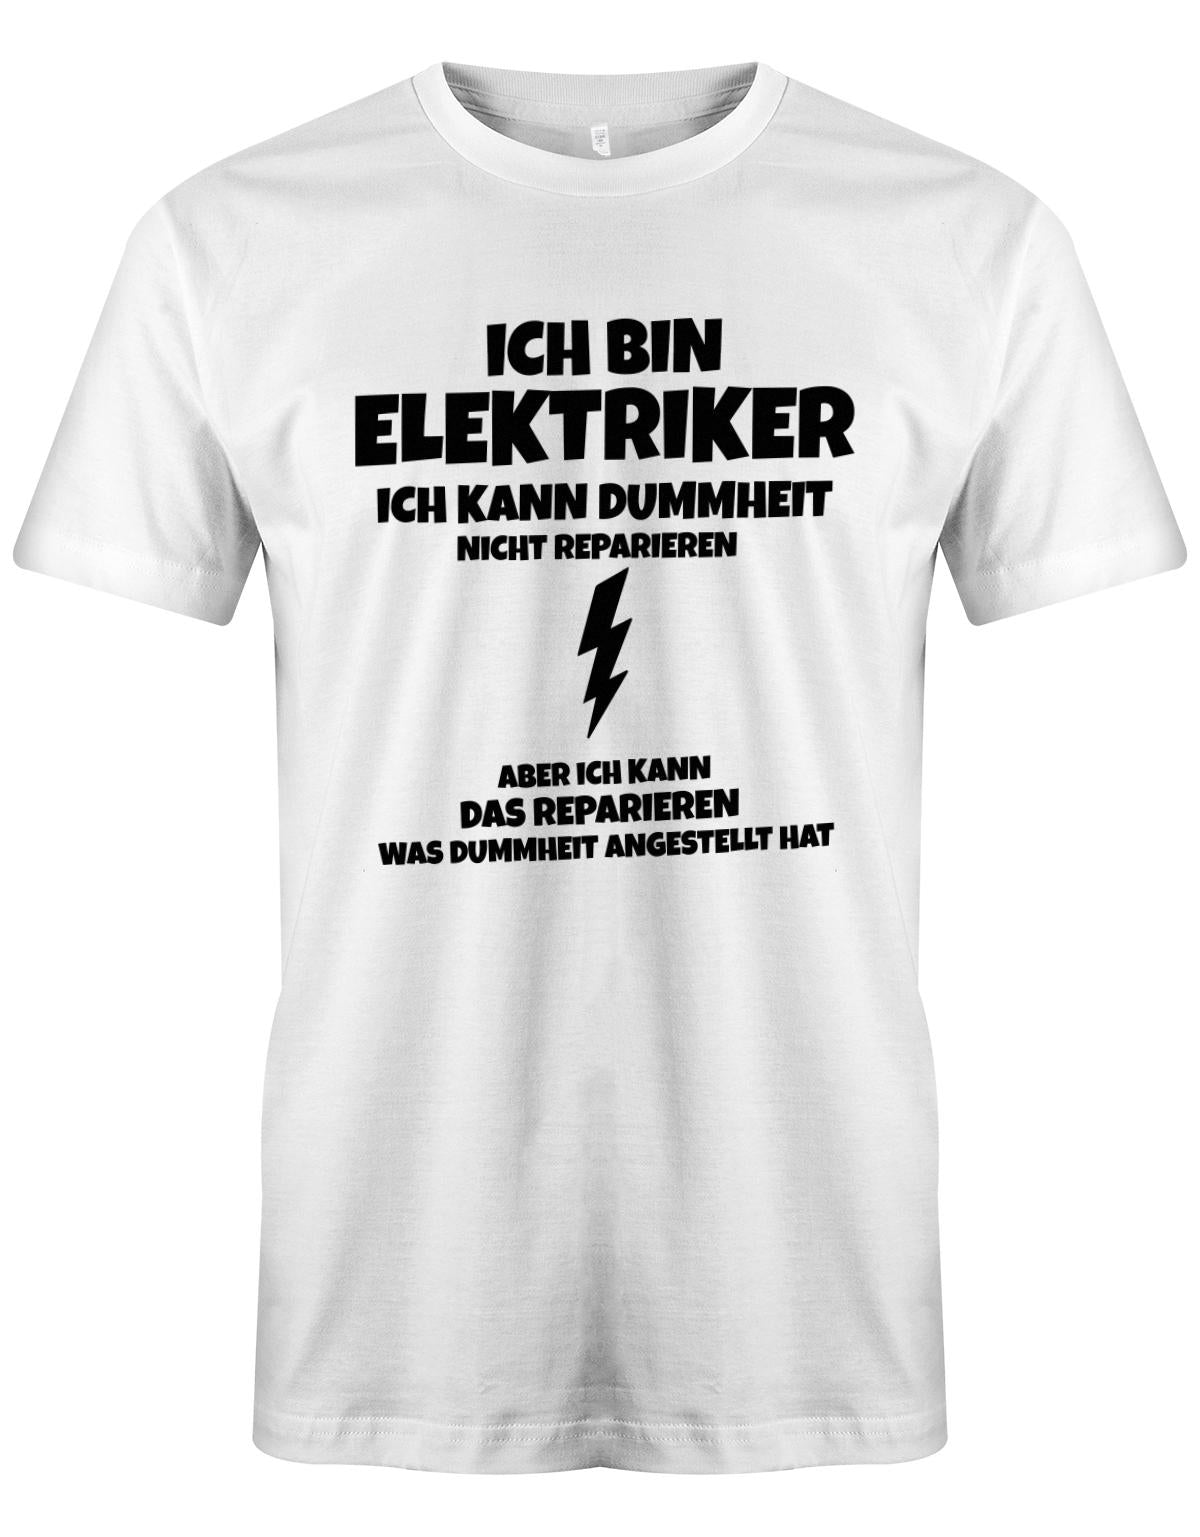 Elektriker Shirt - Ich bin Elektriker, ich kann Dummheit nicht reparieren. Aber ich kann das reparieren, was Dummheit angestellt hat. Weiss